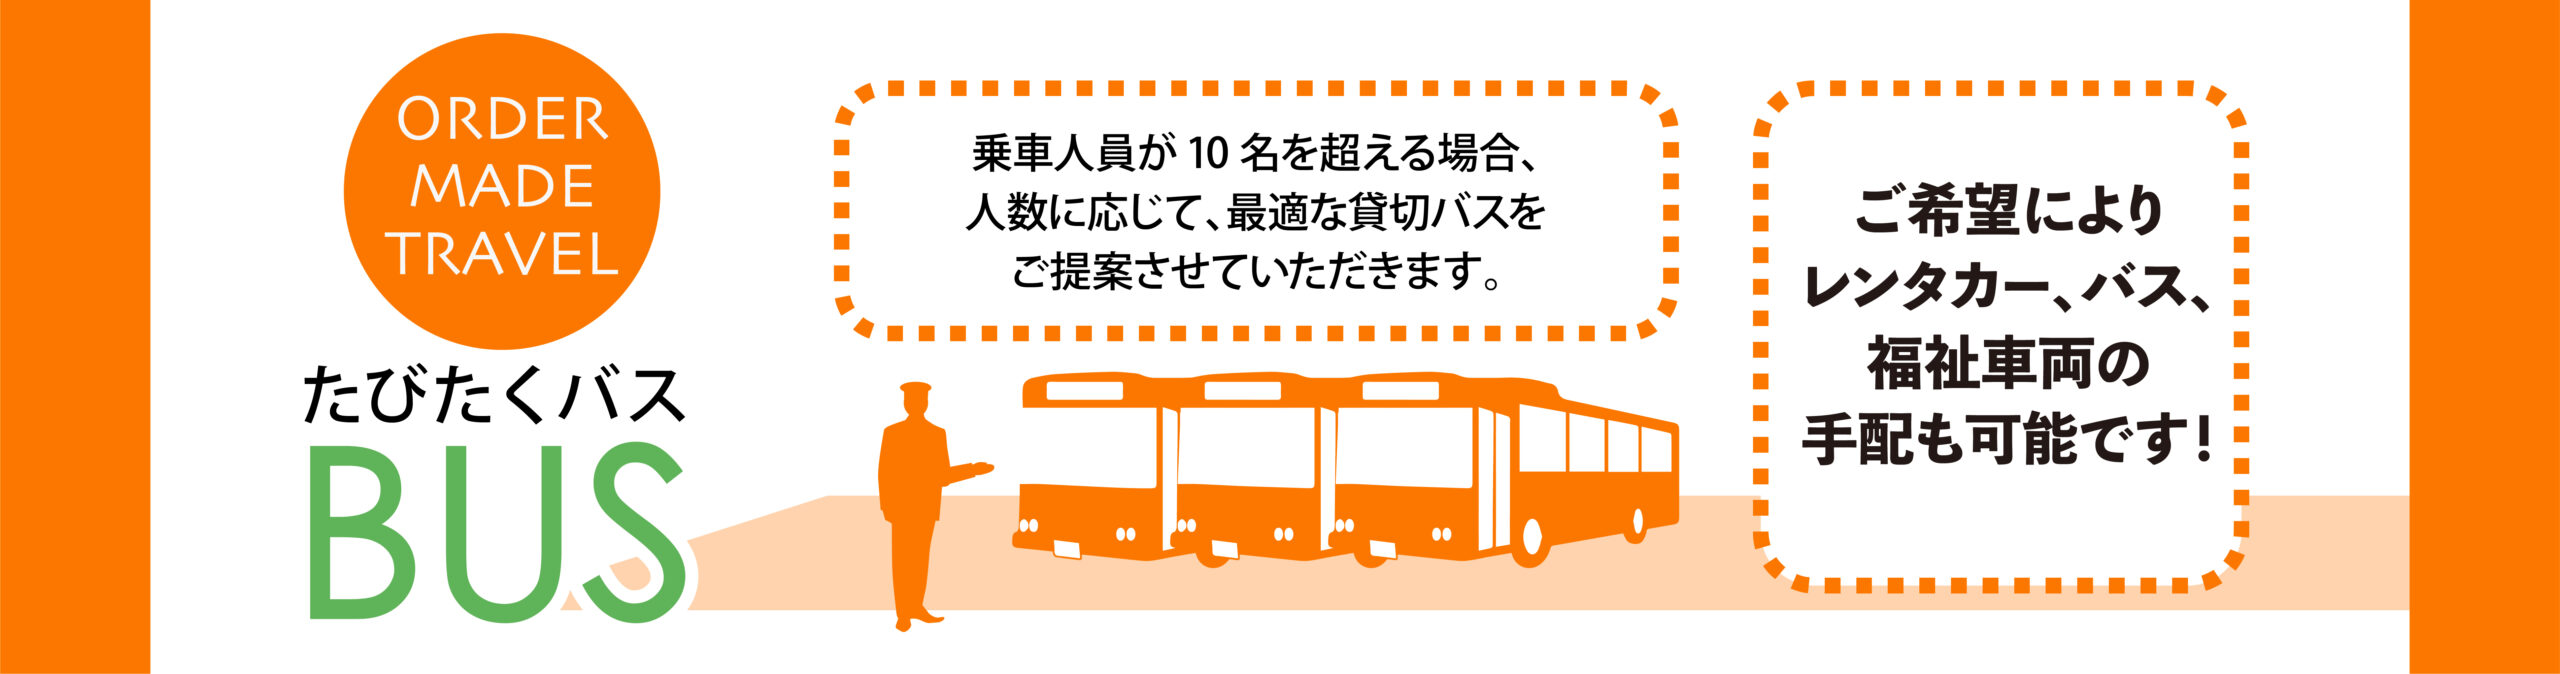 https://tabitaku.co.jp/bus/